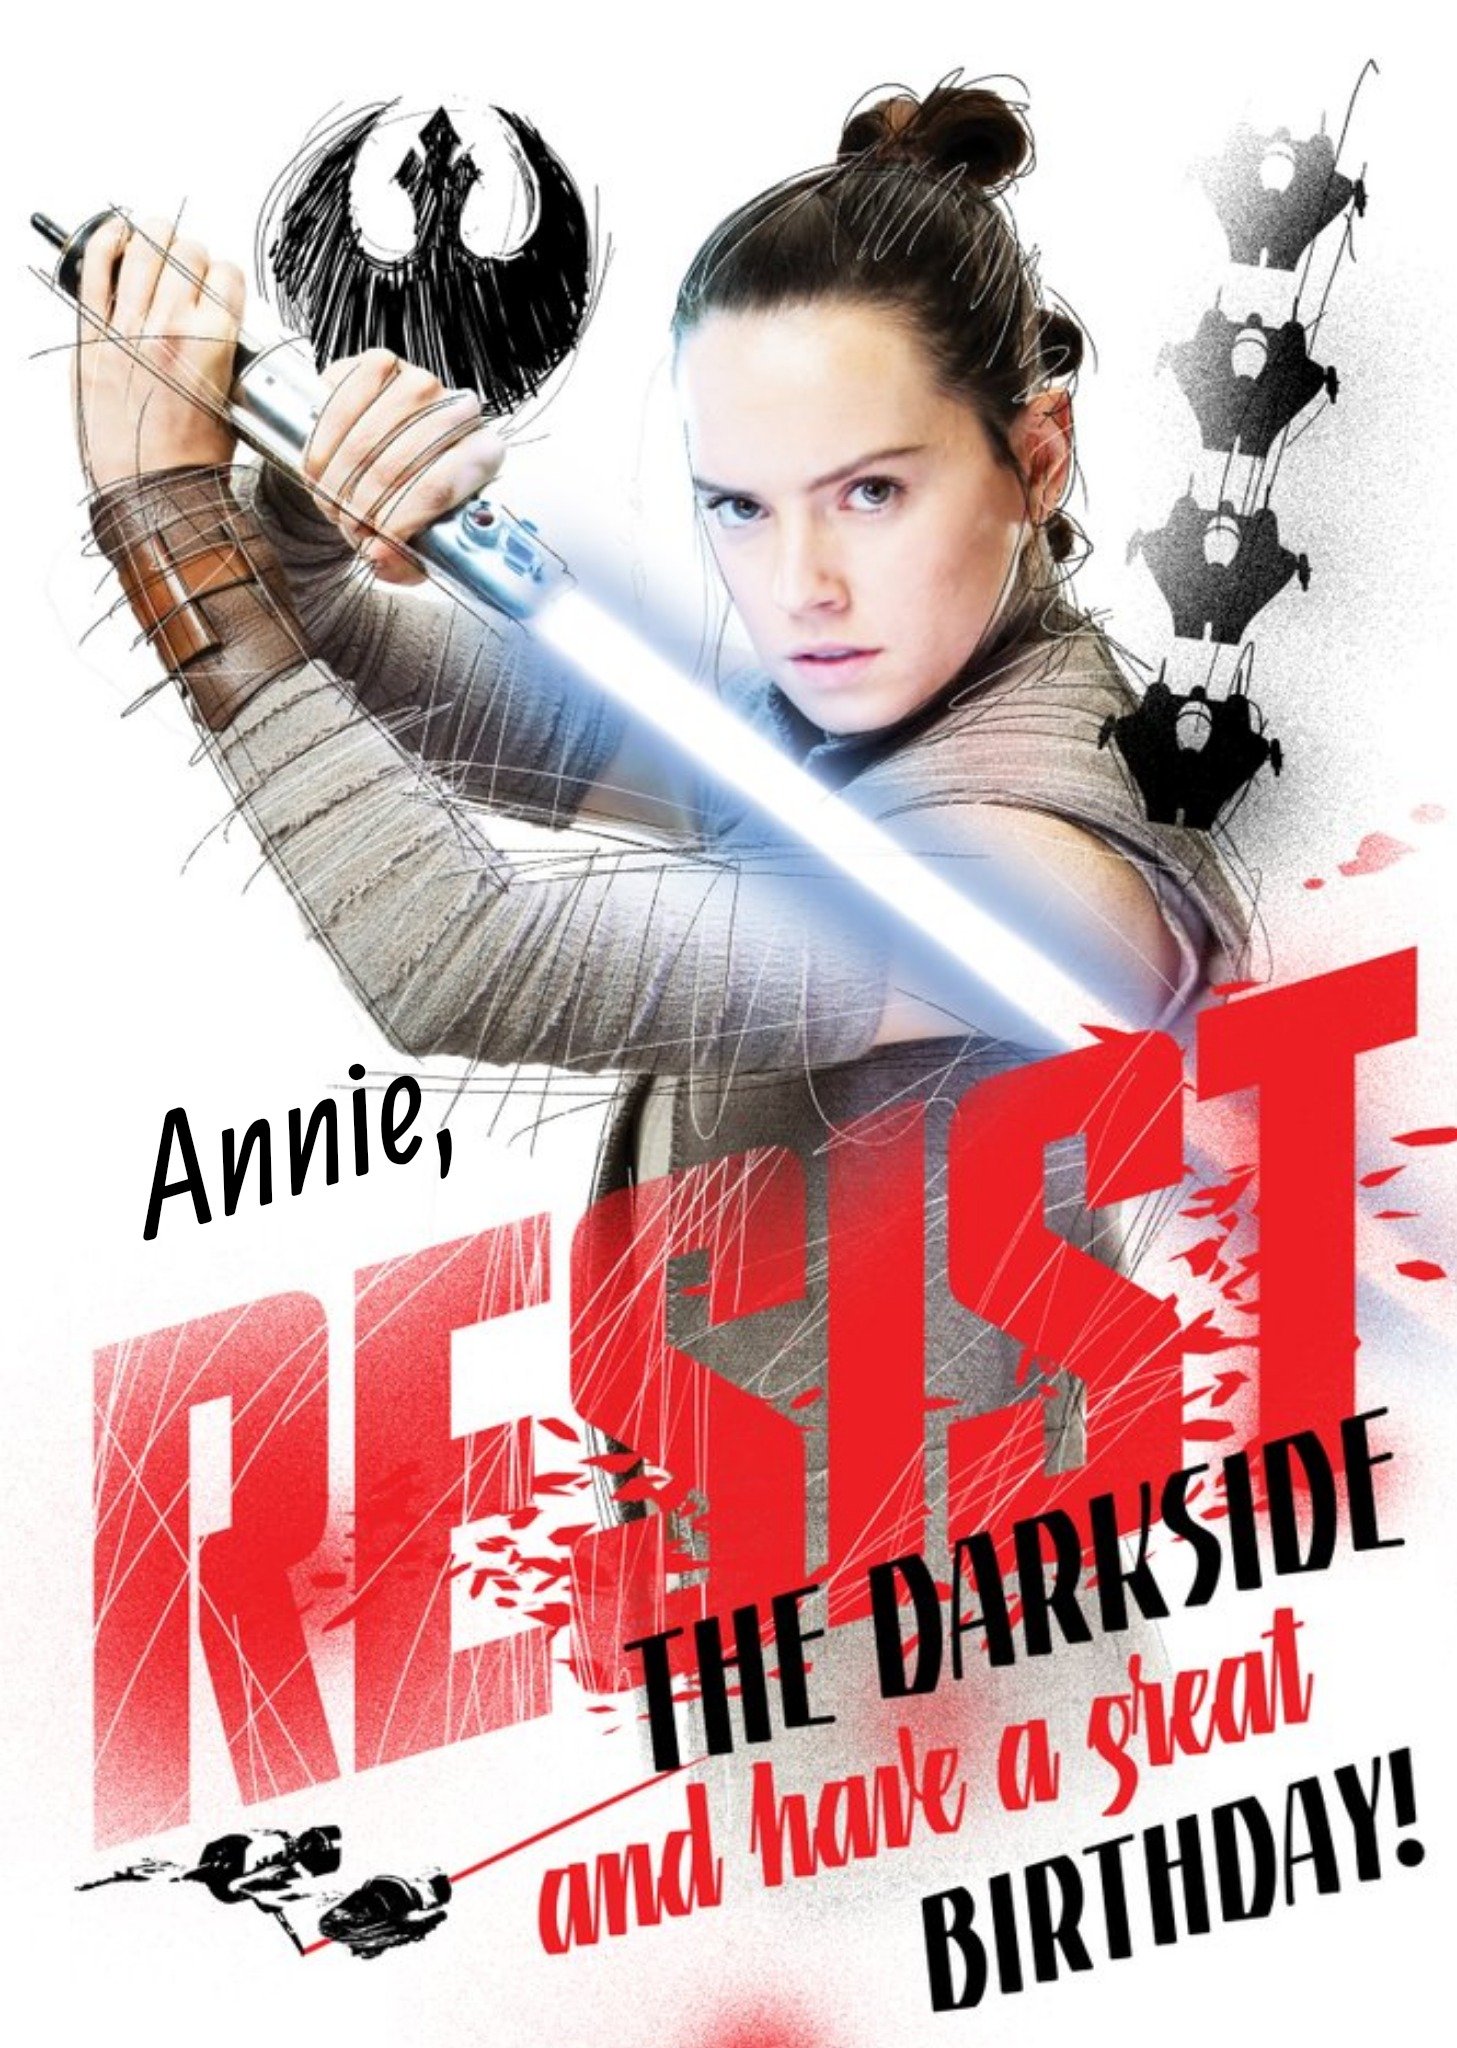 Disney Star Wars Rey Resist The Darkside Personalised Card Ecard